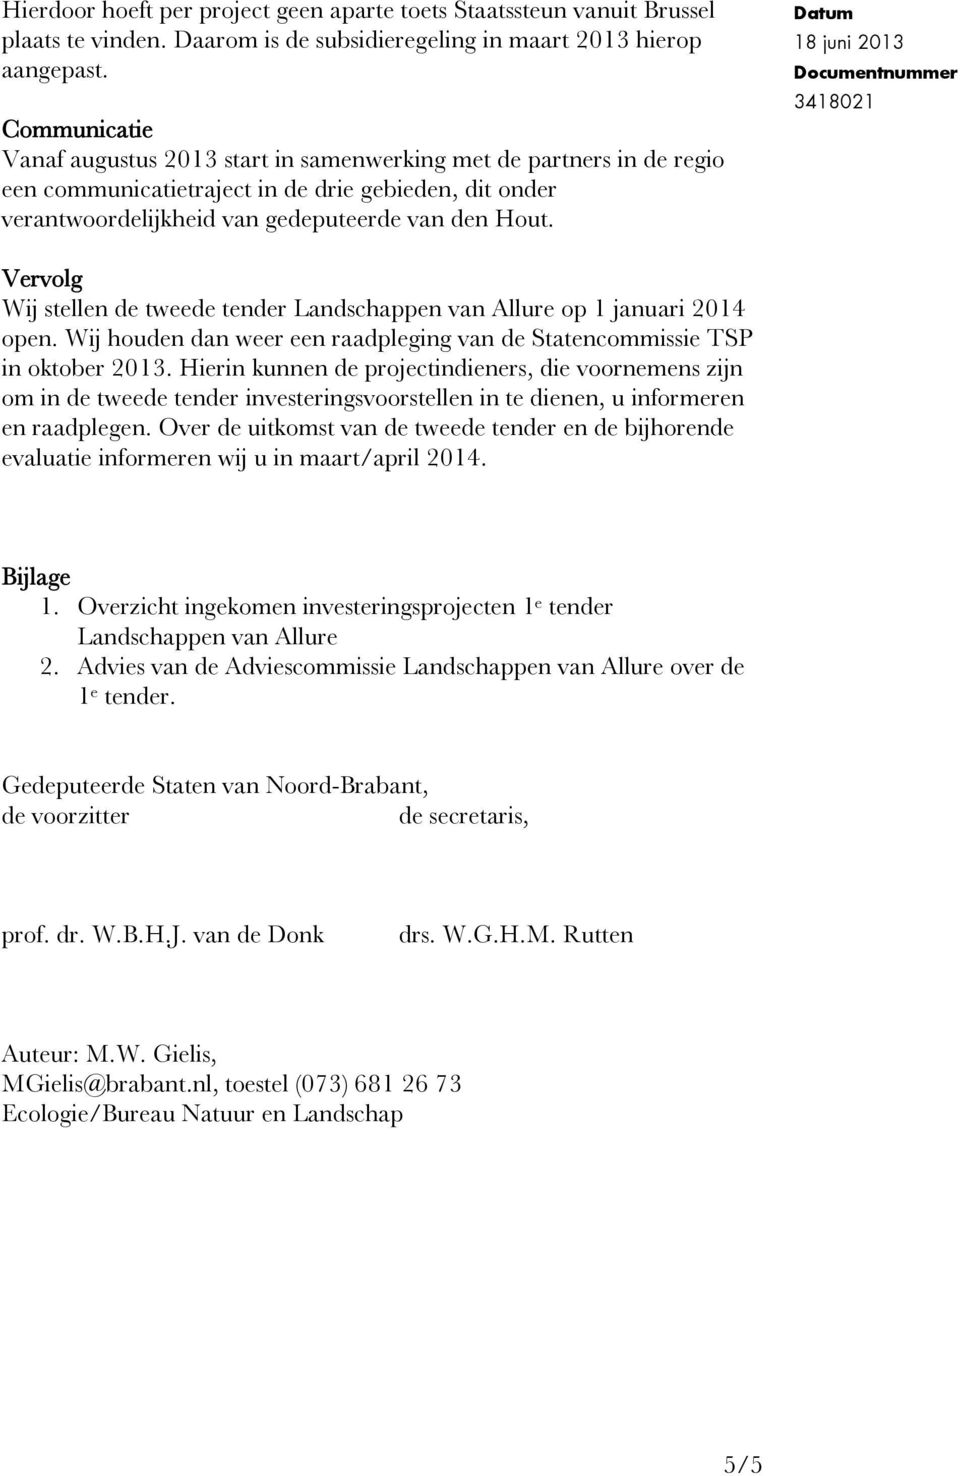 Datum 18 juni 2013 Documentnummer 3418021 Vervolg Wij stellen de tweede tender Landschappen van Allure op 1 januari 2014 open.